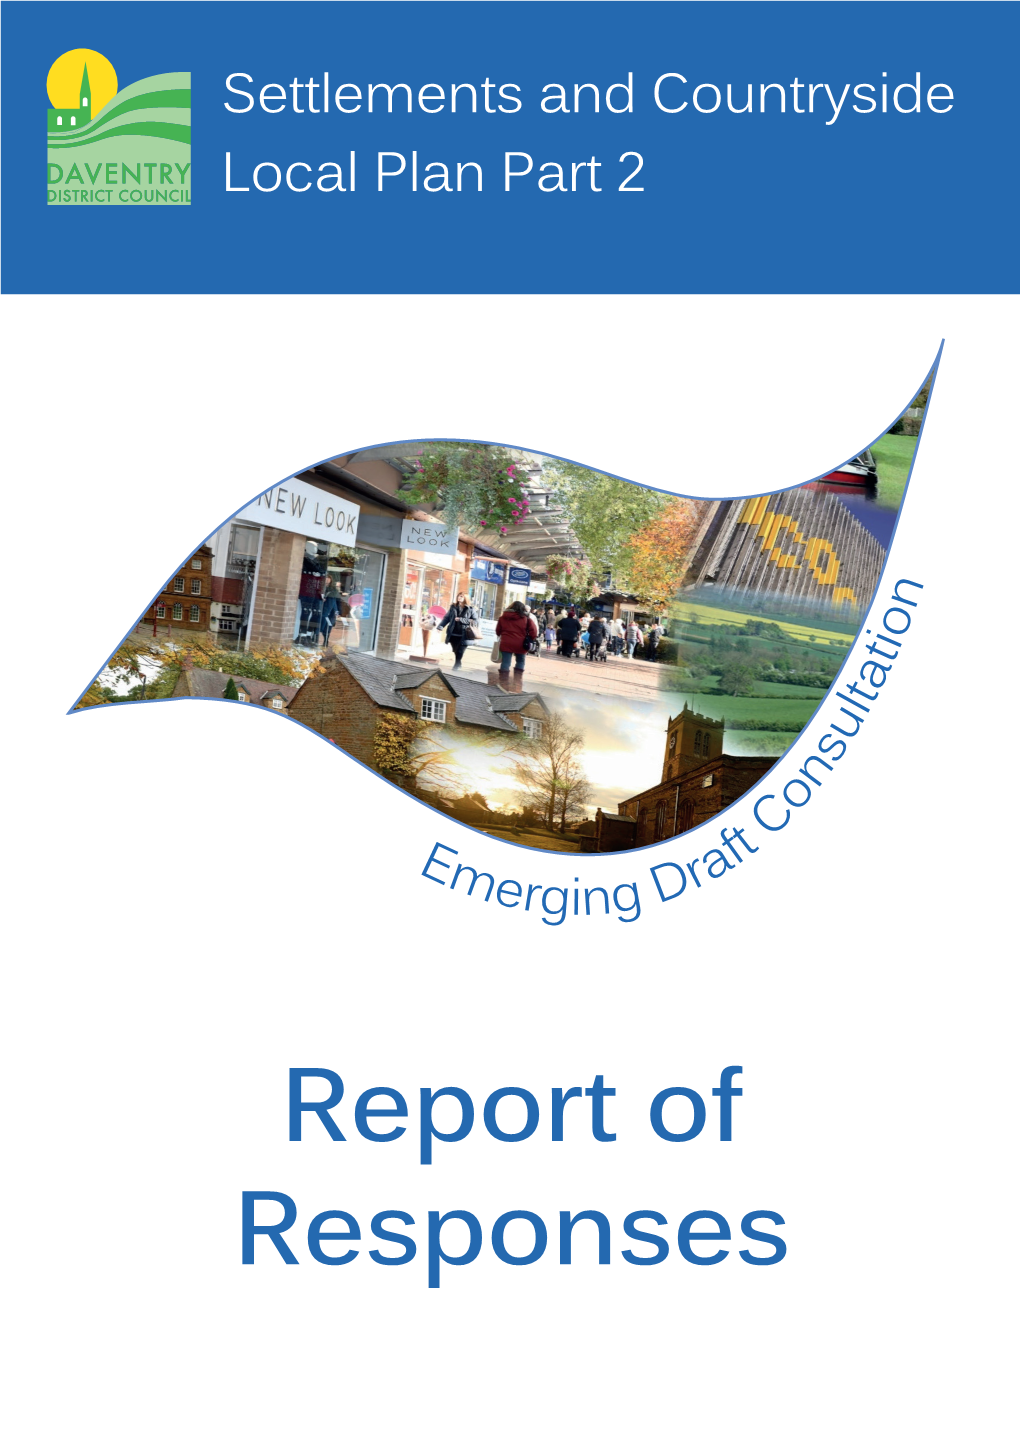 Emerging Draft Report of Responses